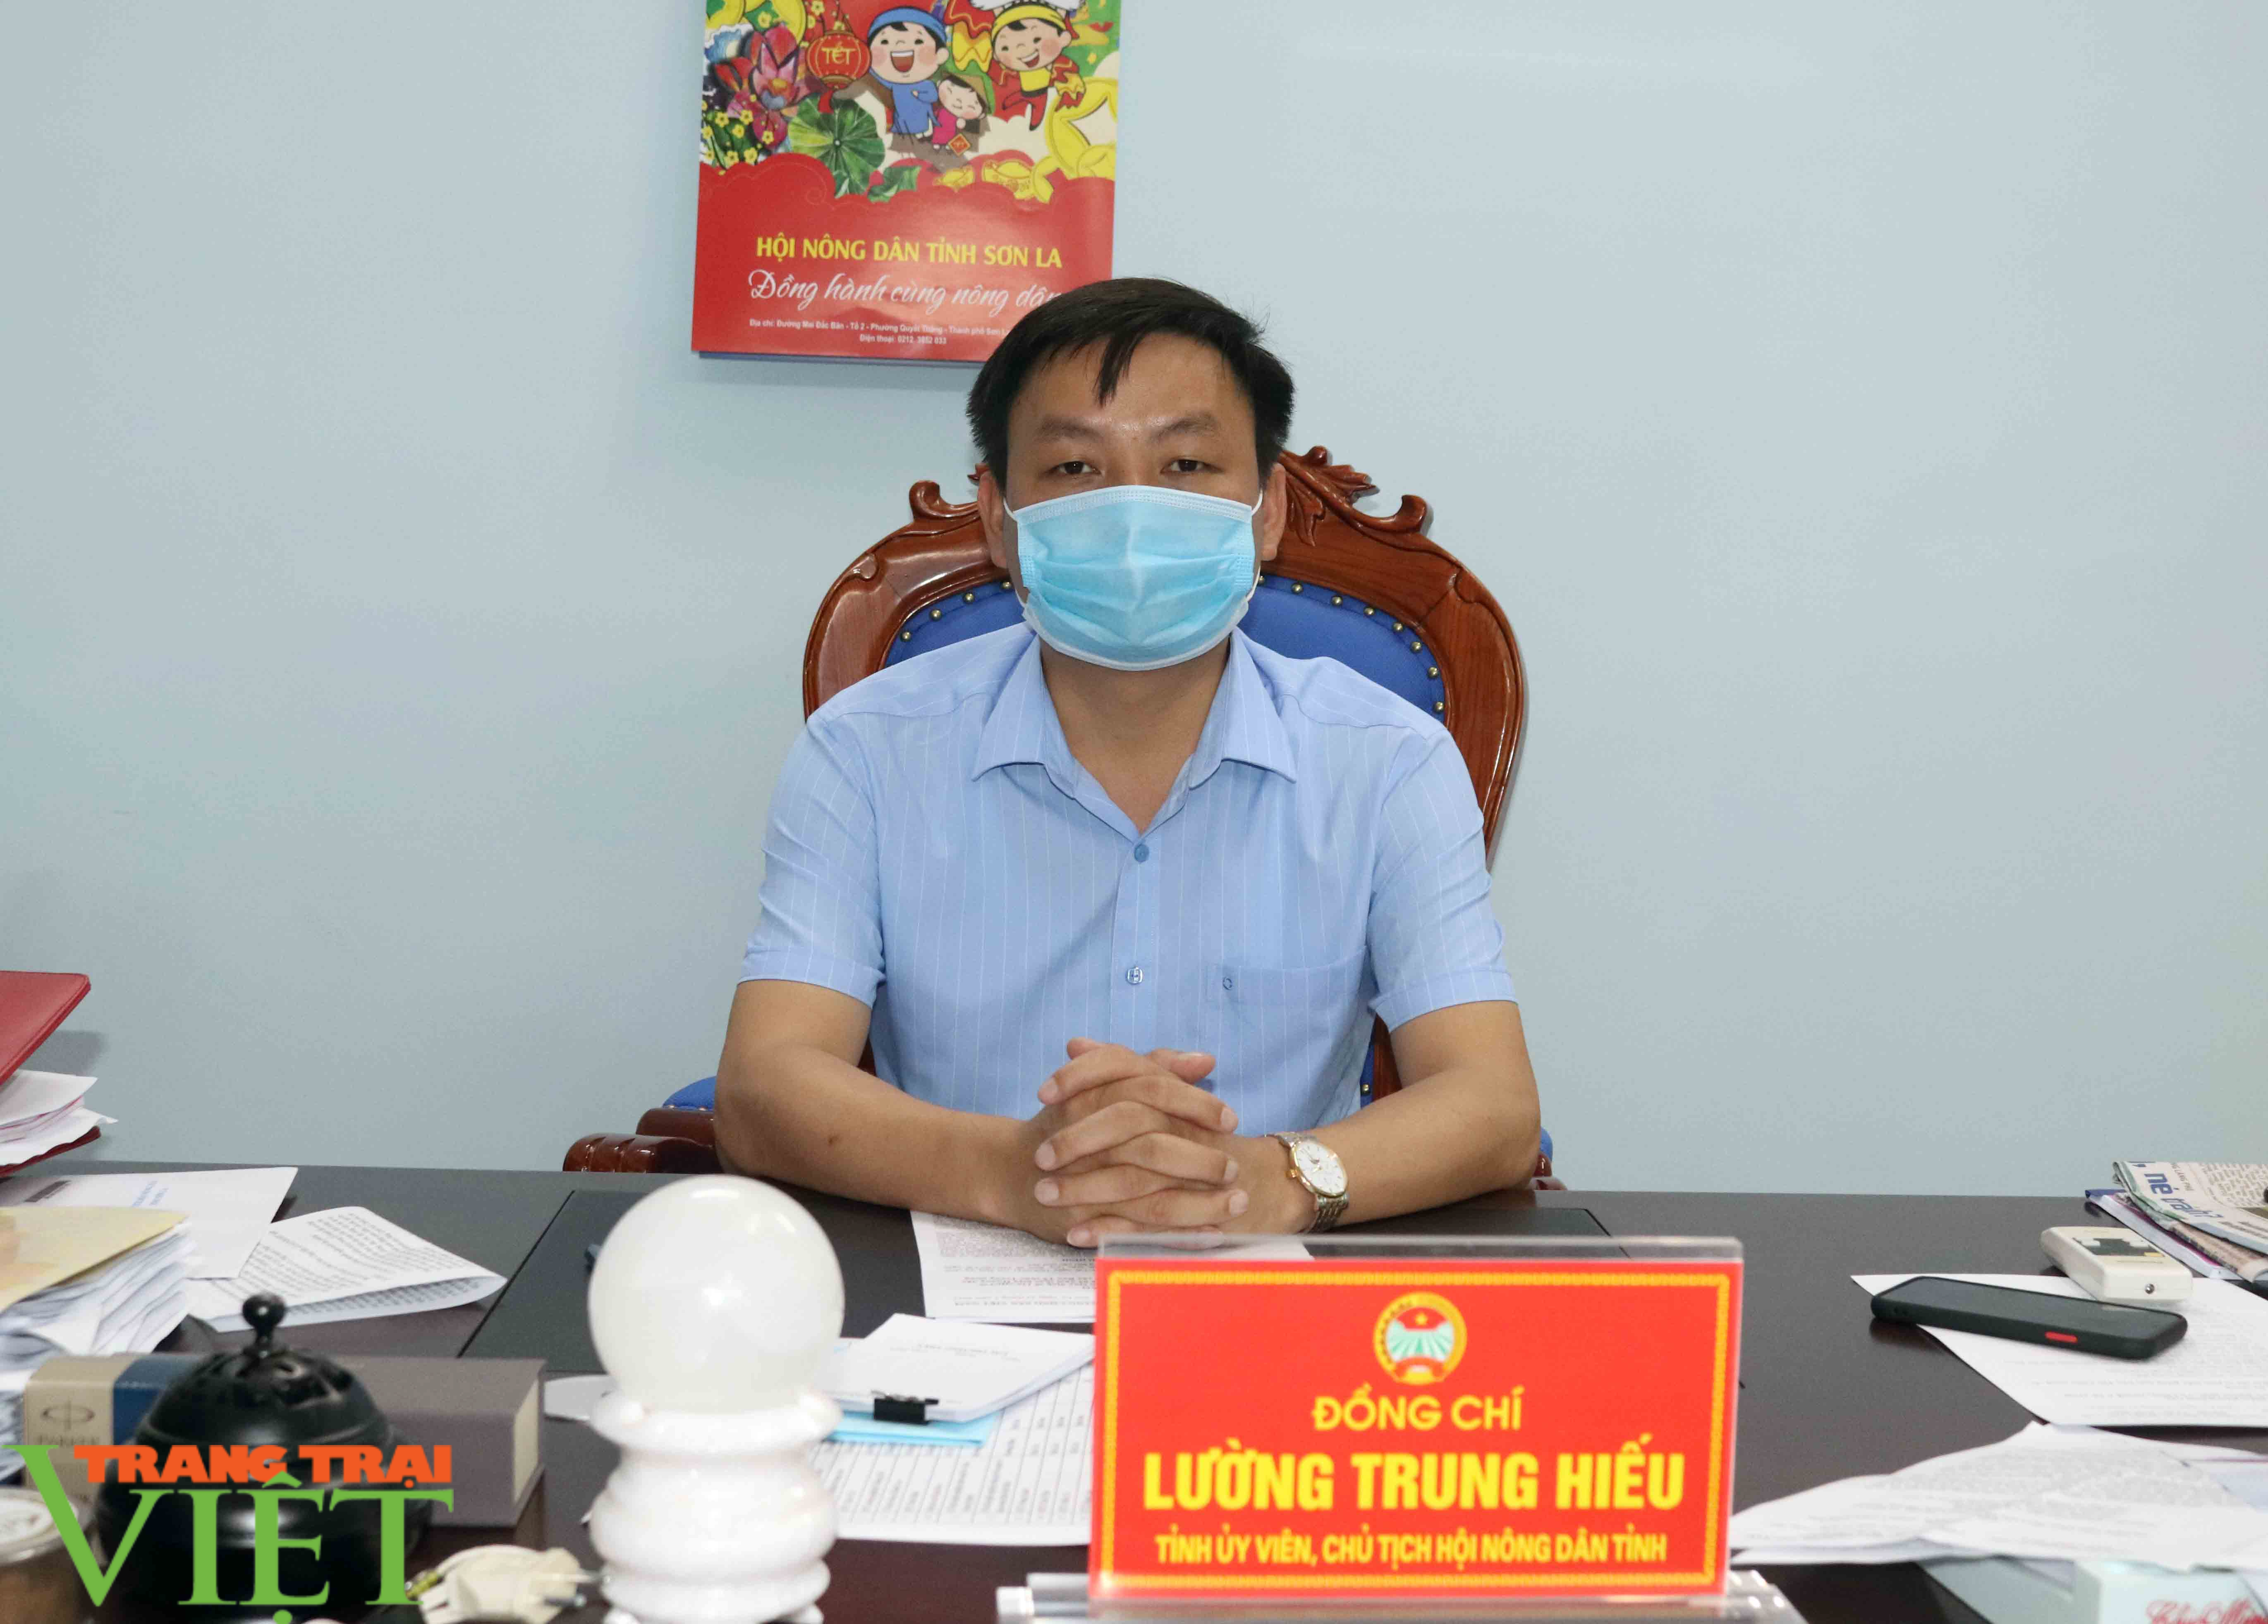 Hội Nông dân tỉnh Sơn La hỗ trợ tiêu thụ nông sản cho nông dân - Ảnh 1.